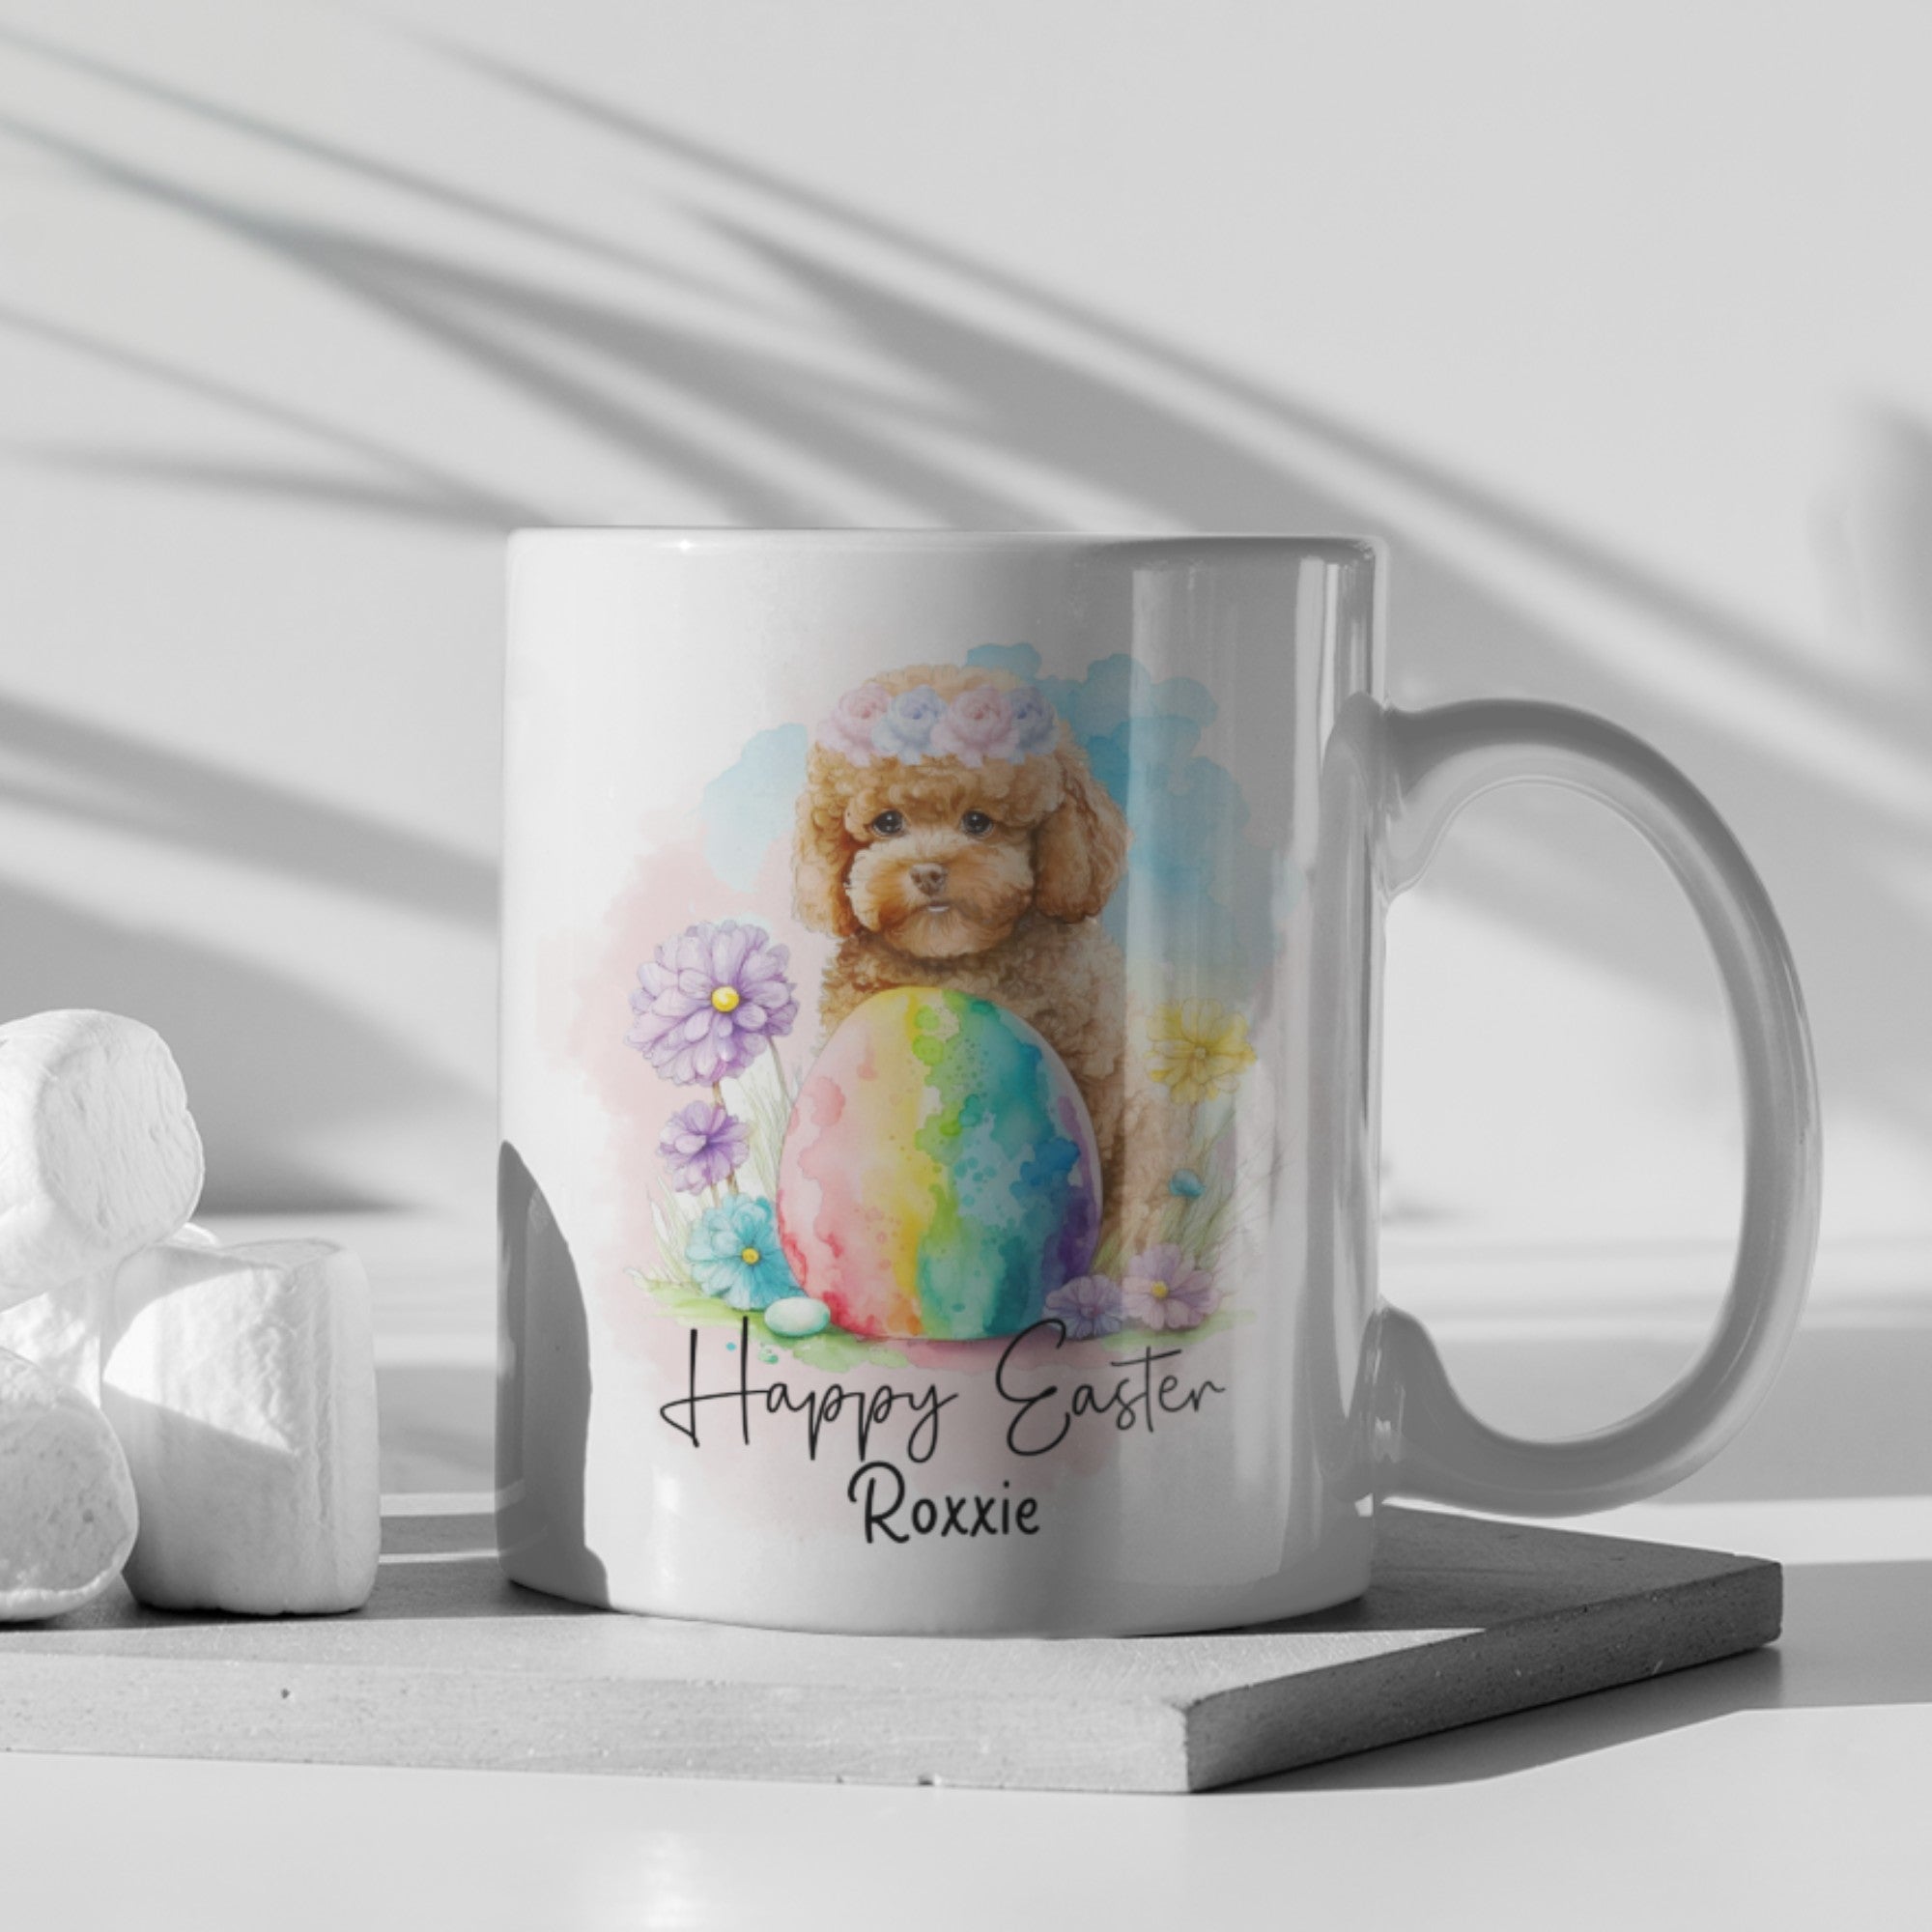 Happy Easter Personalised Poodle Mug - Sweetie